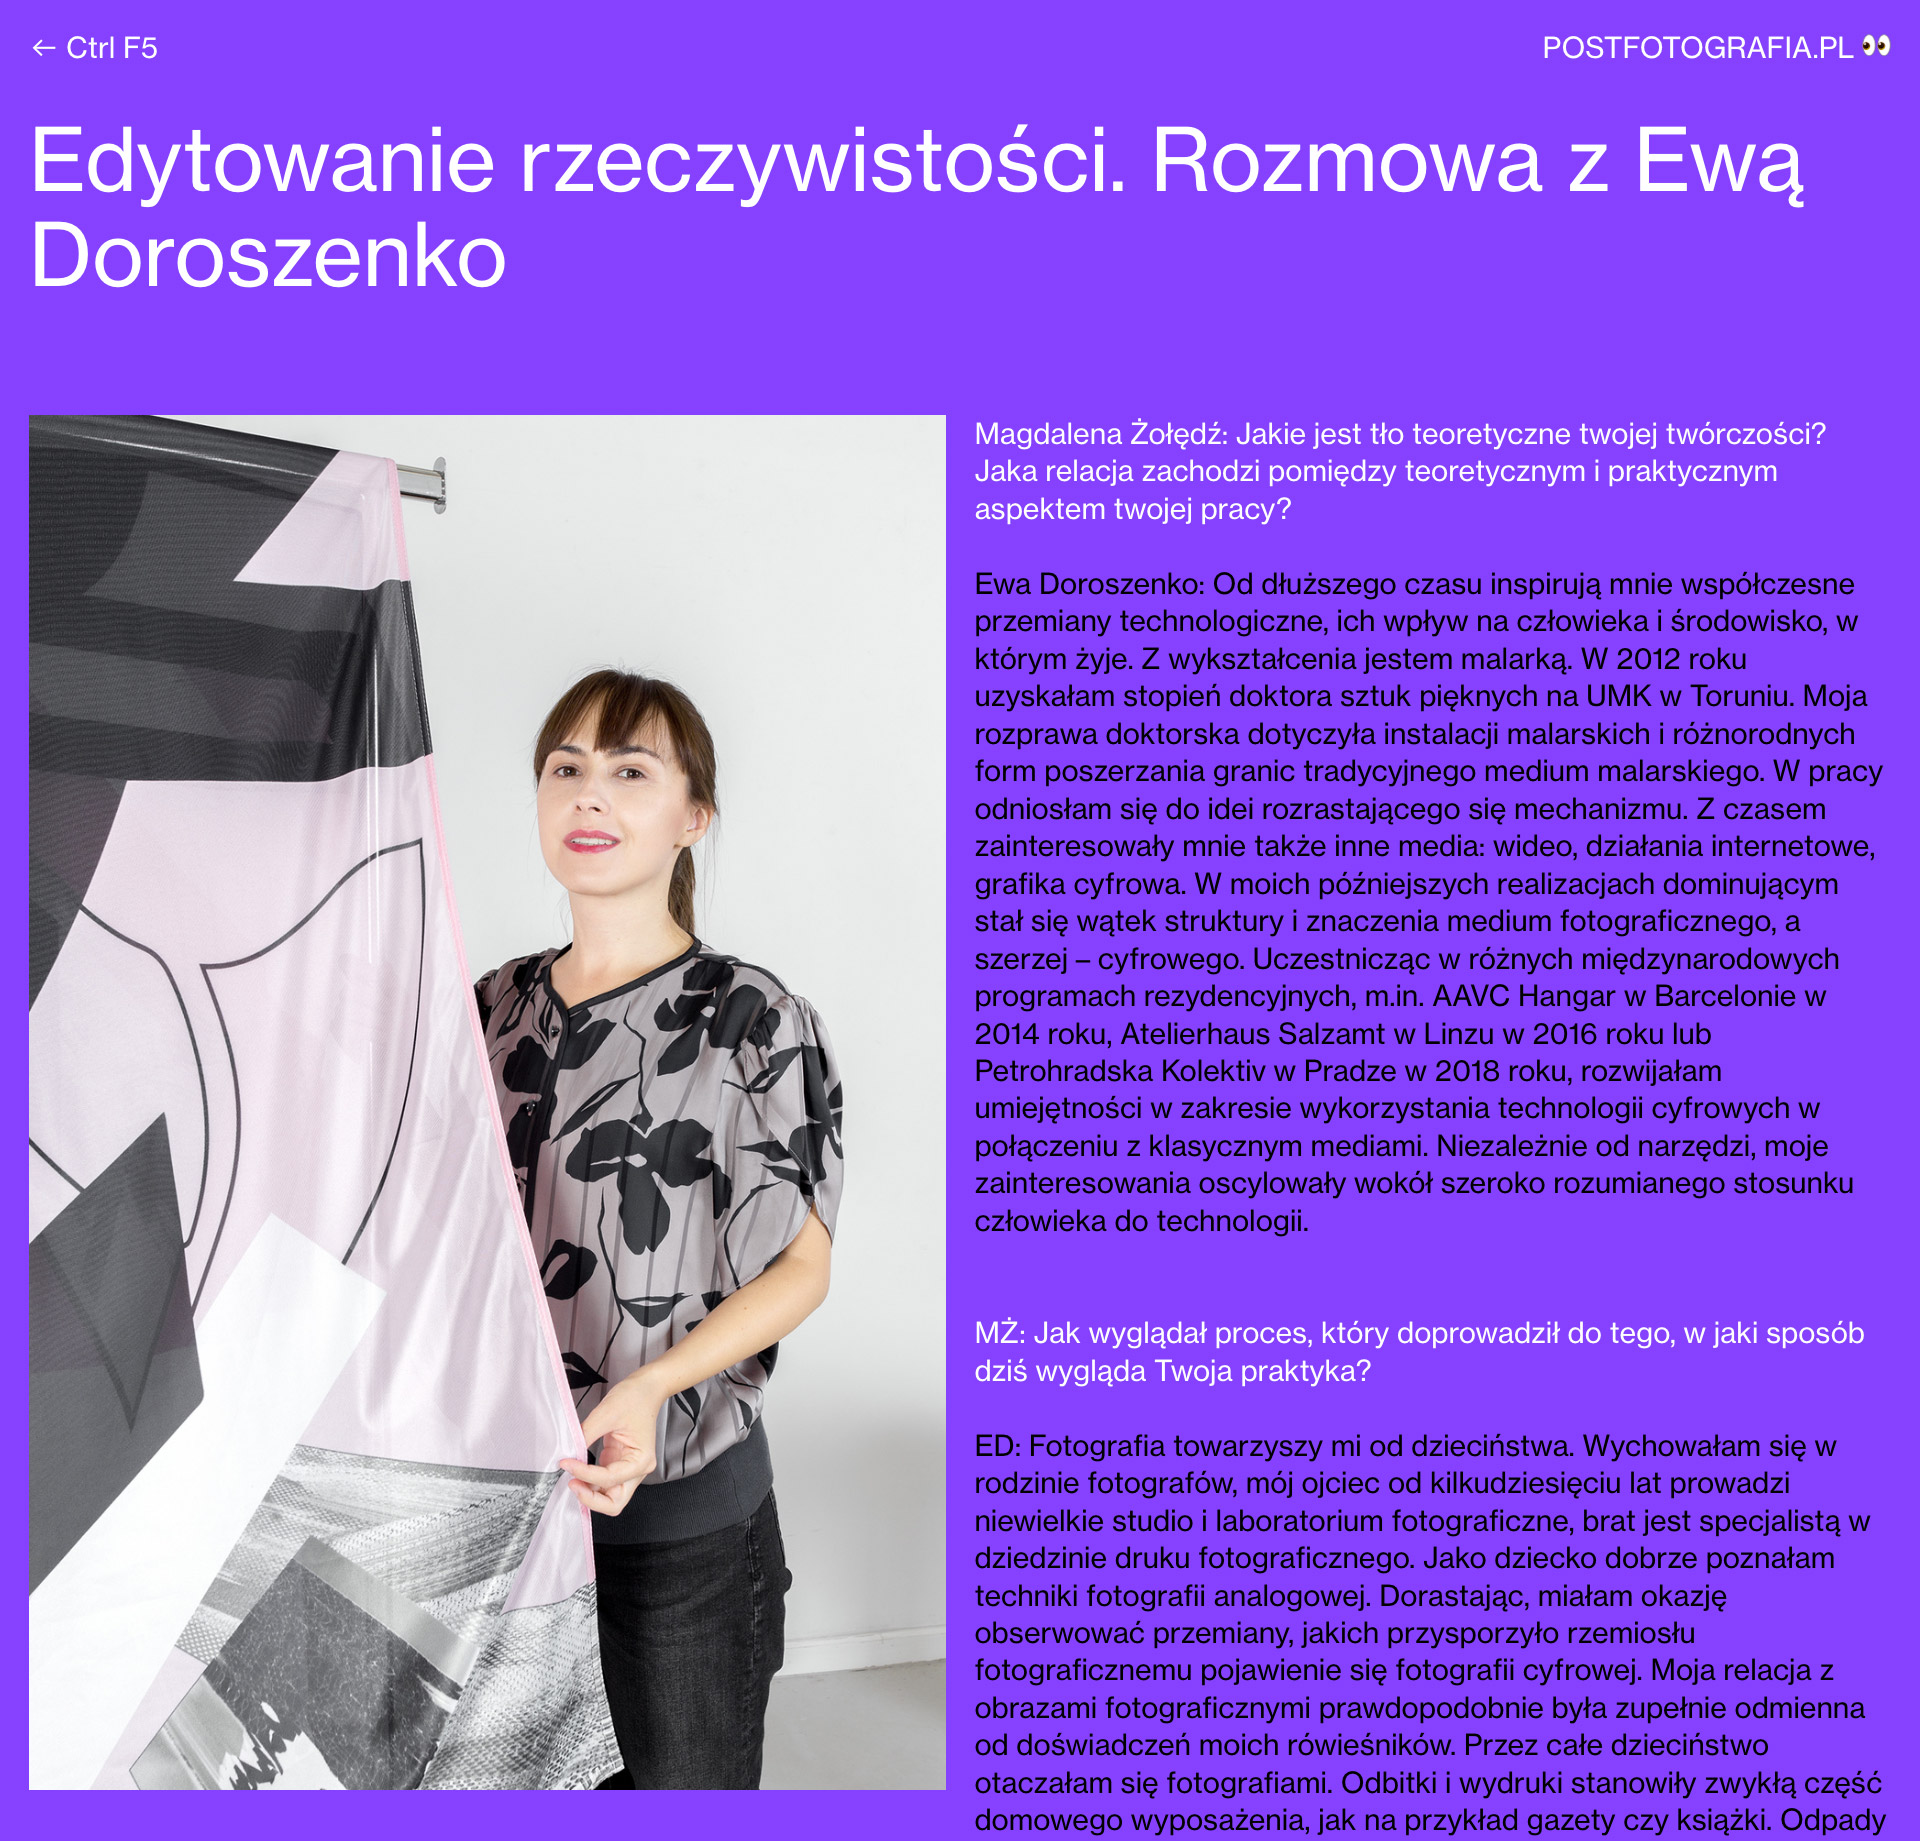 Postfotografia wywiad - Ewa Doroszenko artystka